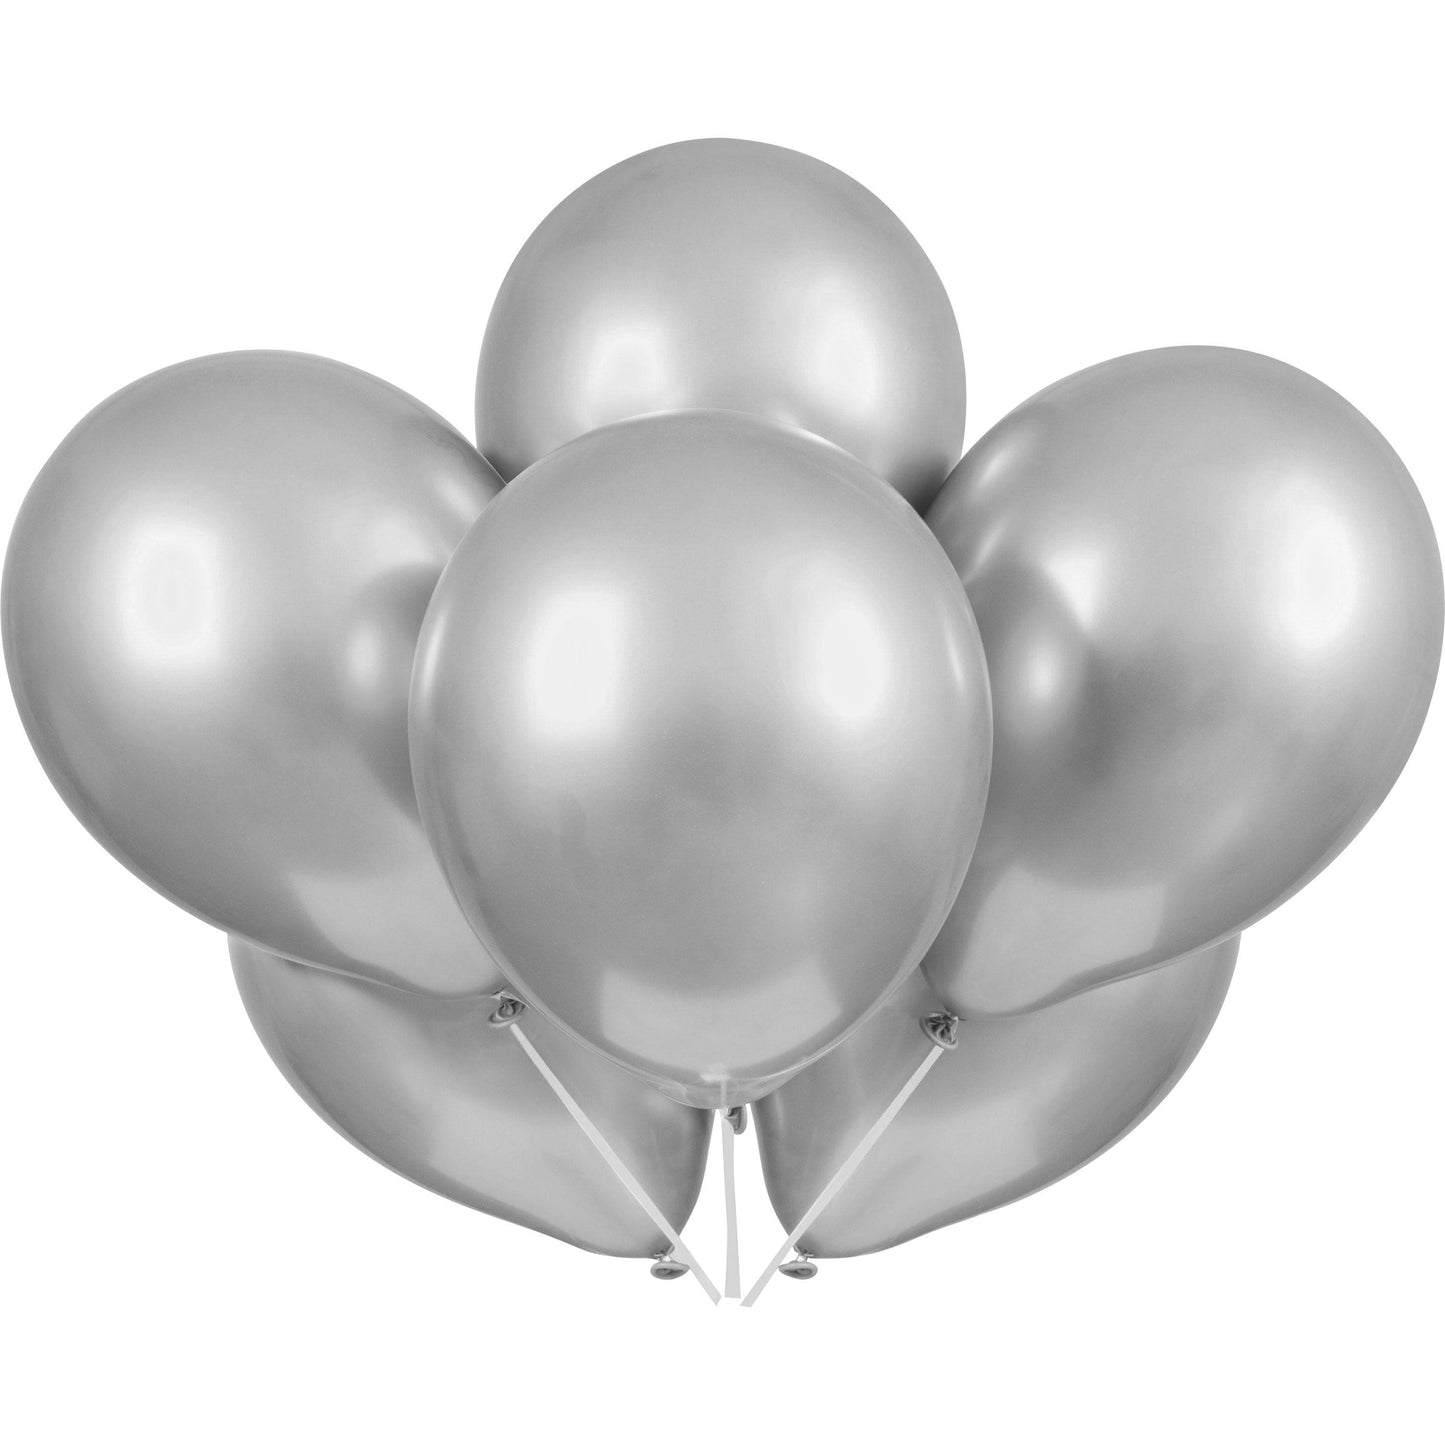 11" Chrome Latex Silver Balloon